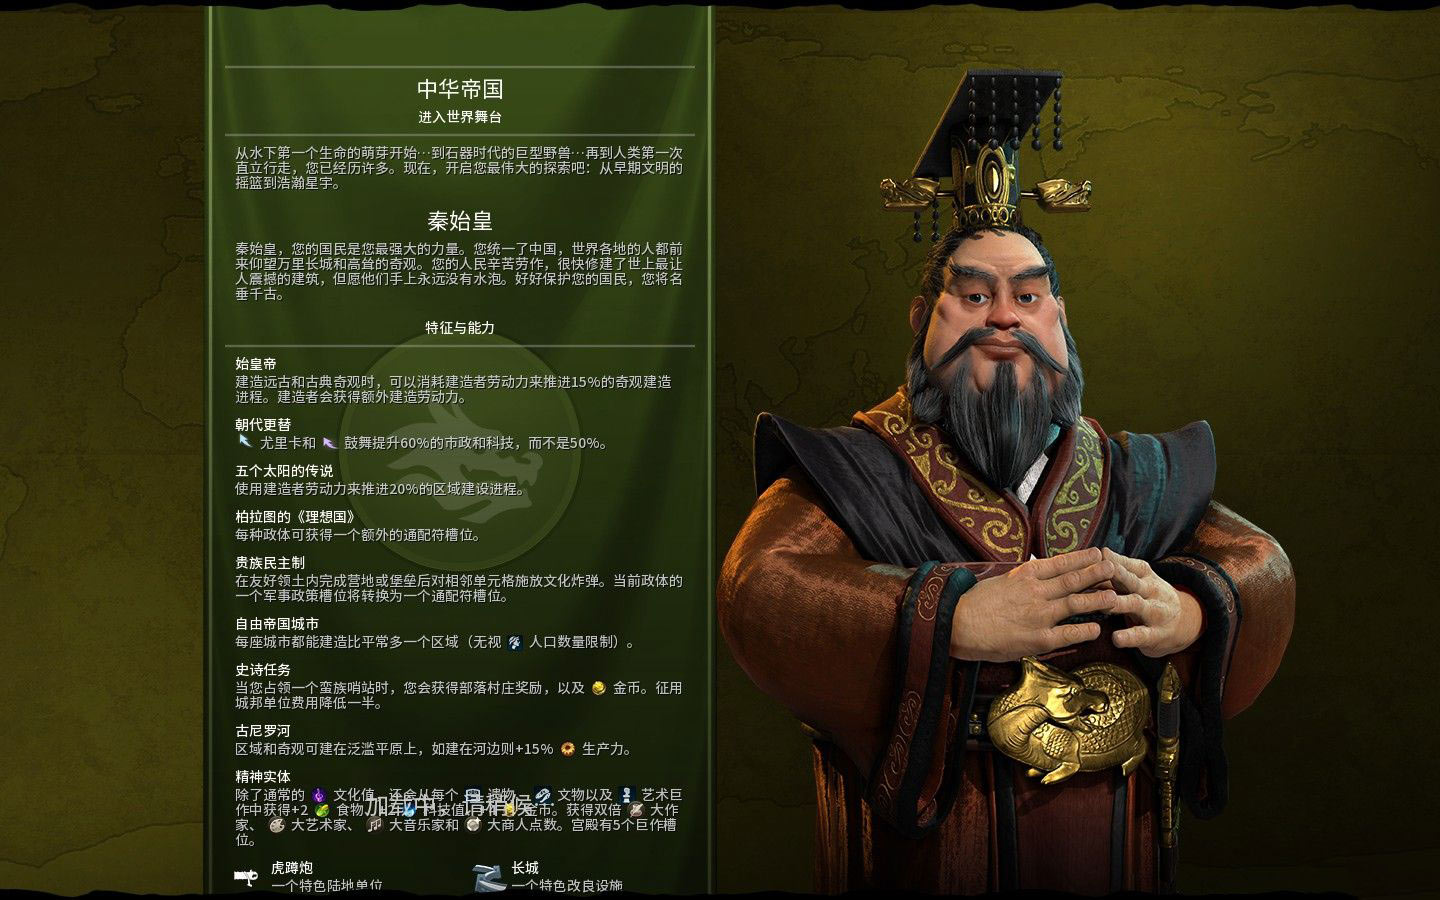 《文明帝國 6》英國領袖由維多利亞女王擔任 釋出新介紹影片《Sid Meier's Civilization VI》 - 巴哈姆特